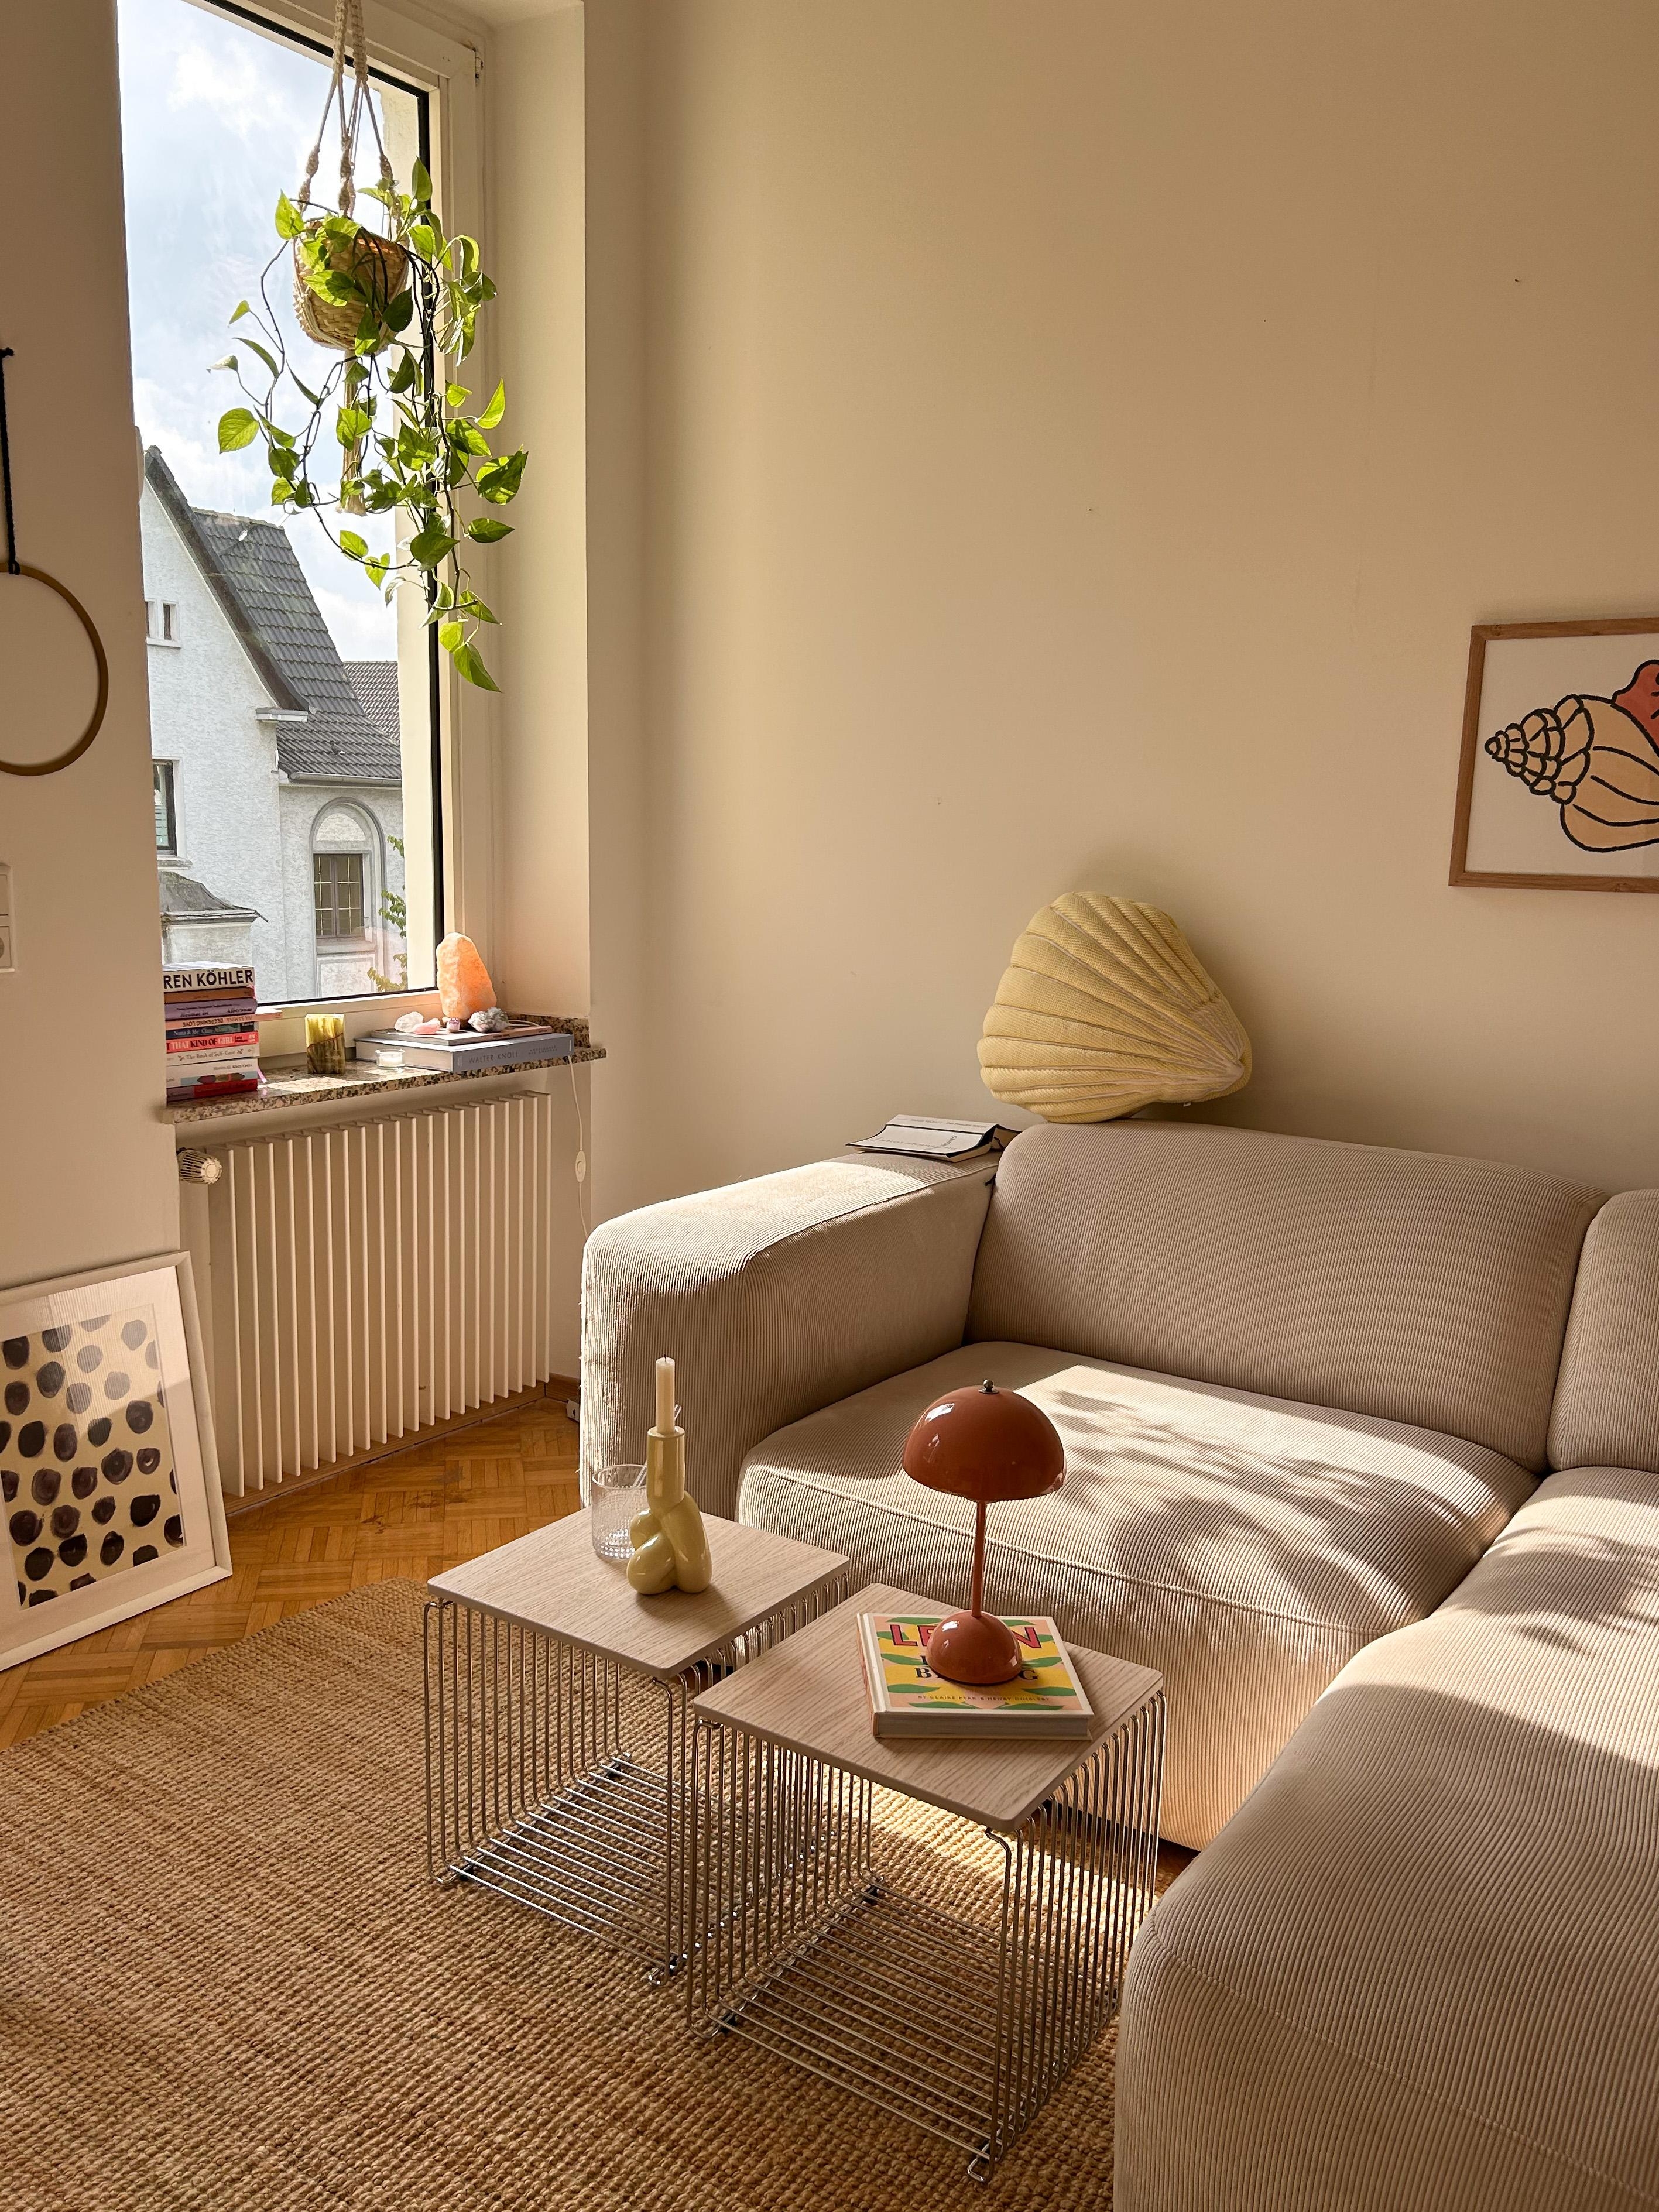 Sundown und hallo zurück im Wohnzimmer du schöner Teppich 🌞 
#sundown#lights#neutralcolours#couchstyle